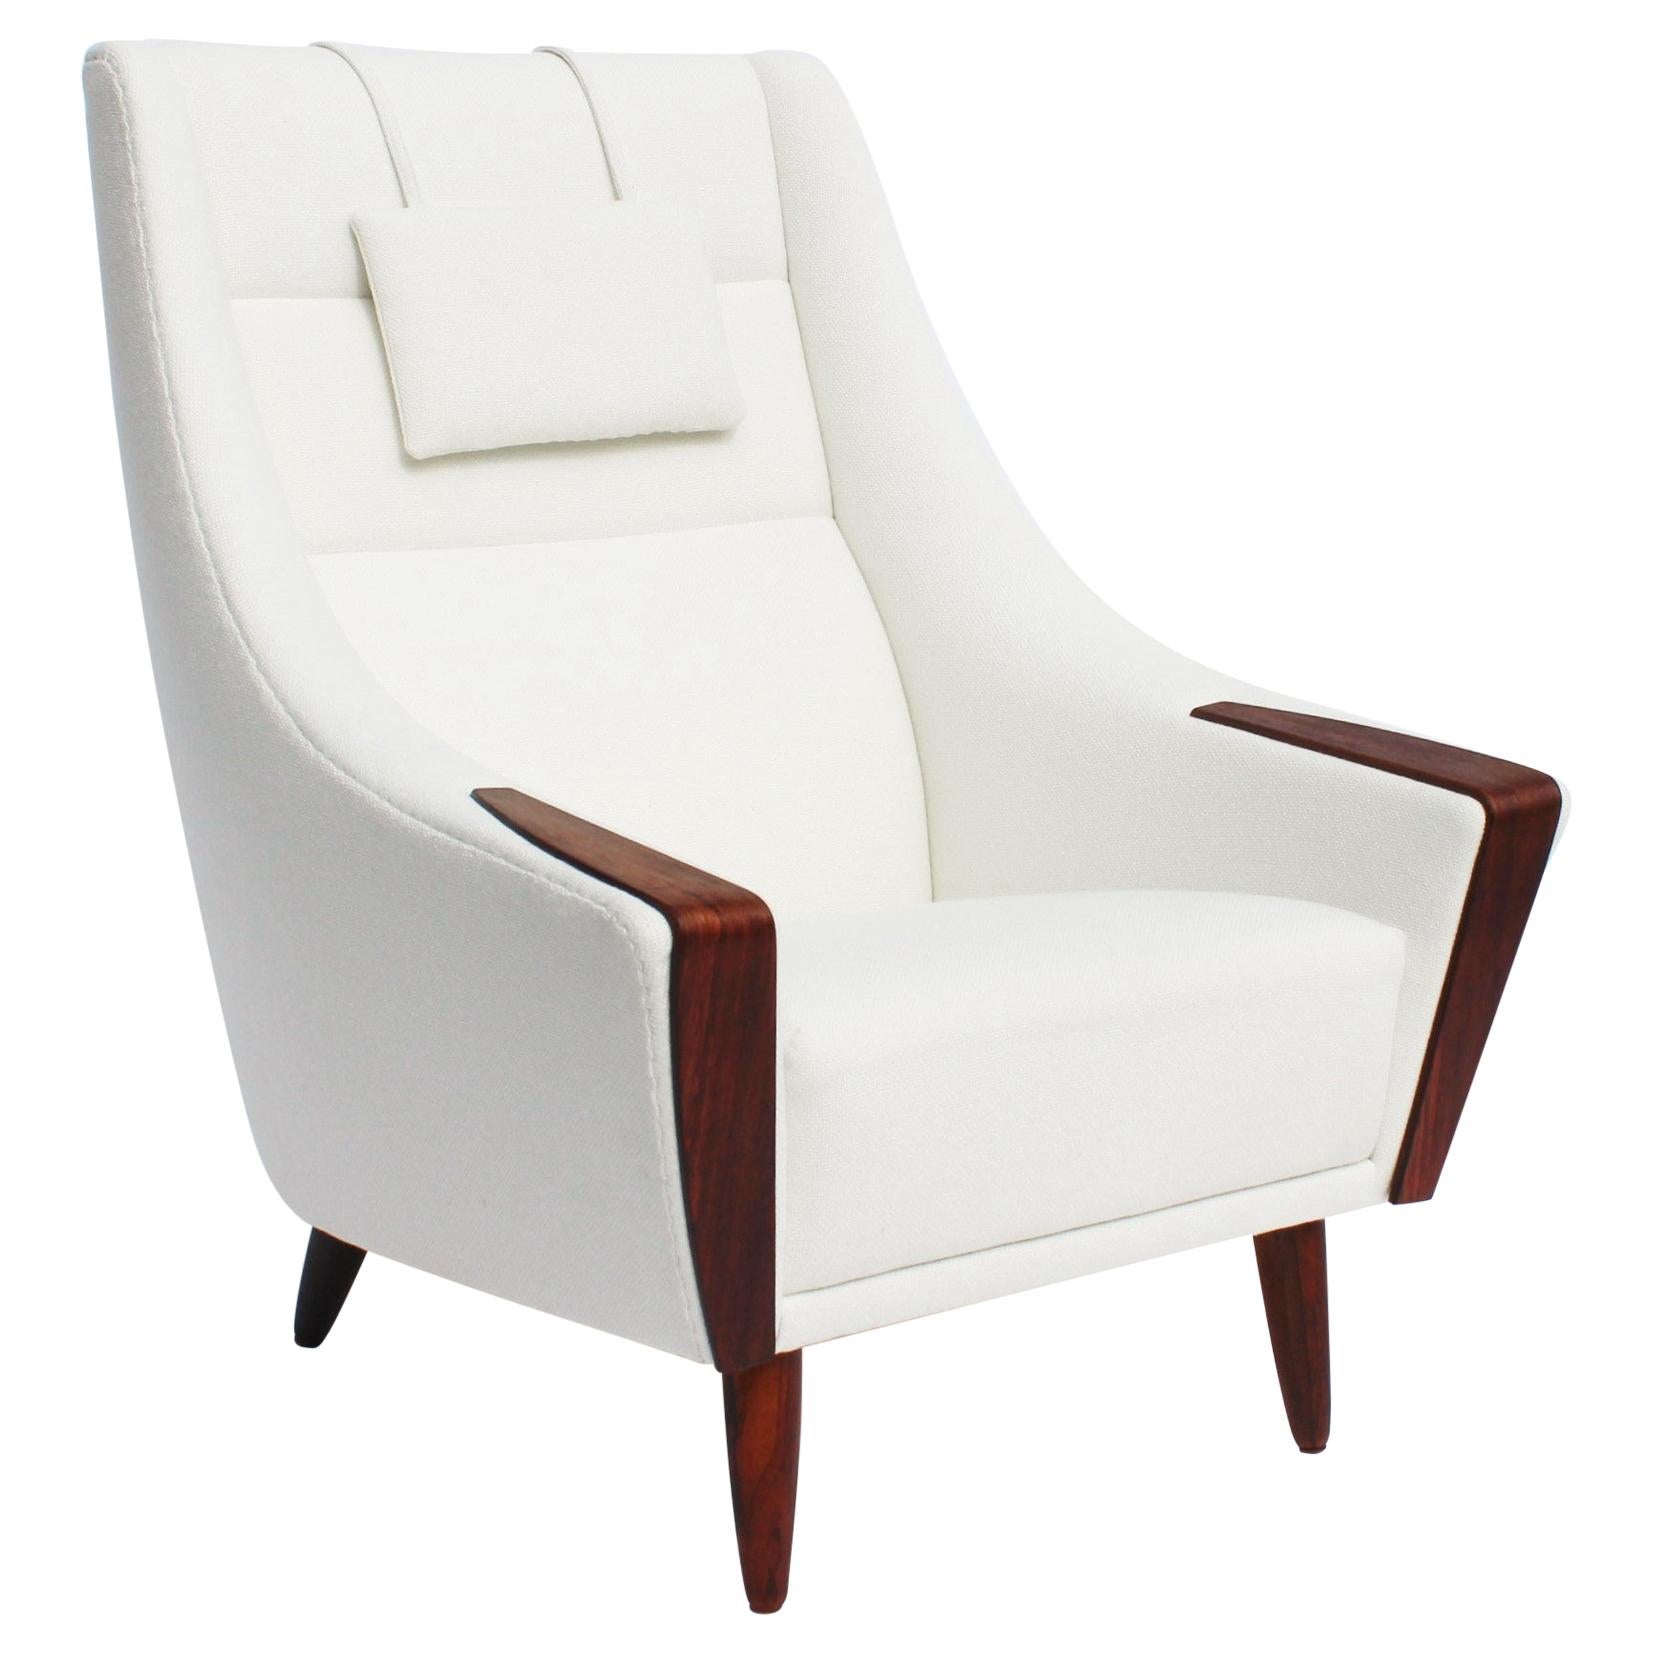 Easy Chair mit hoher Rückenlehne, gepolstert mit weißem Stoff, dänisches Design, 1960er Jahre